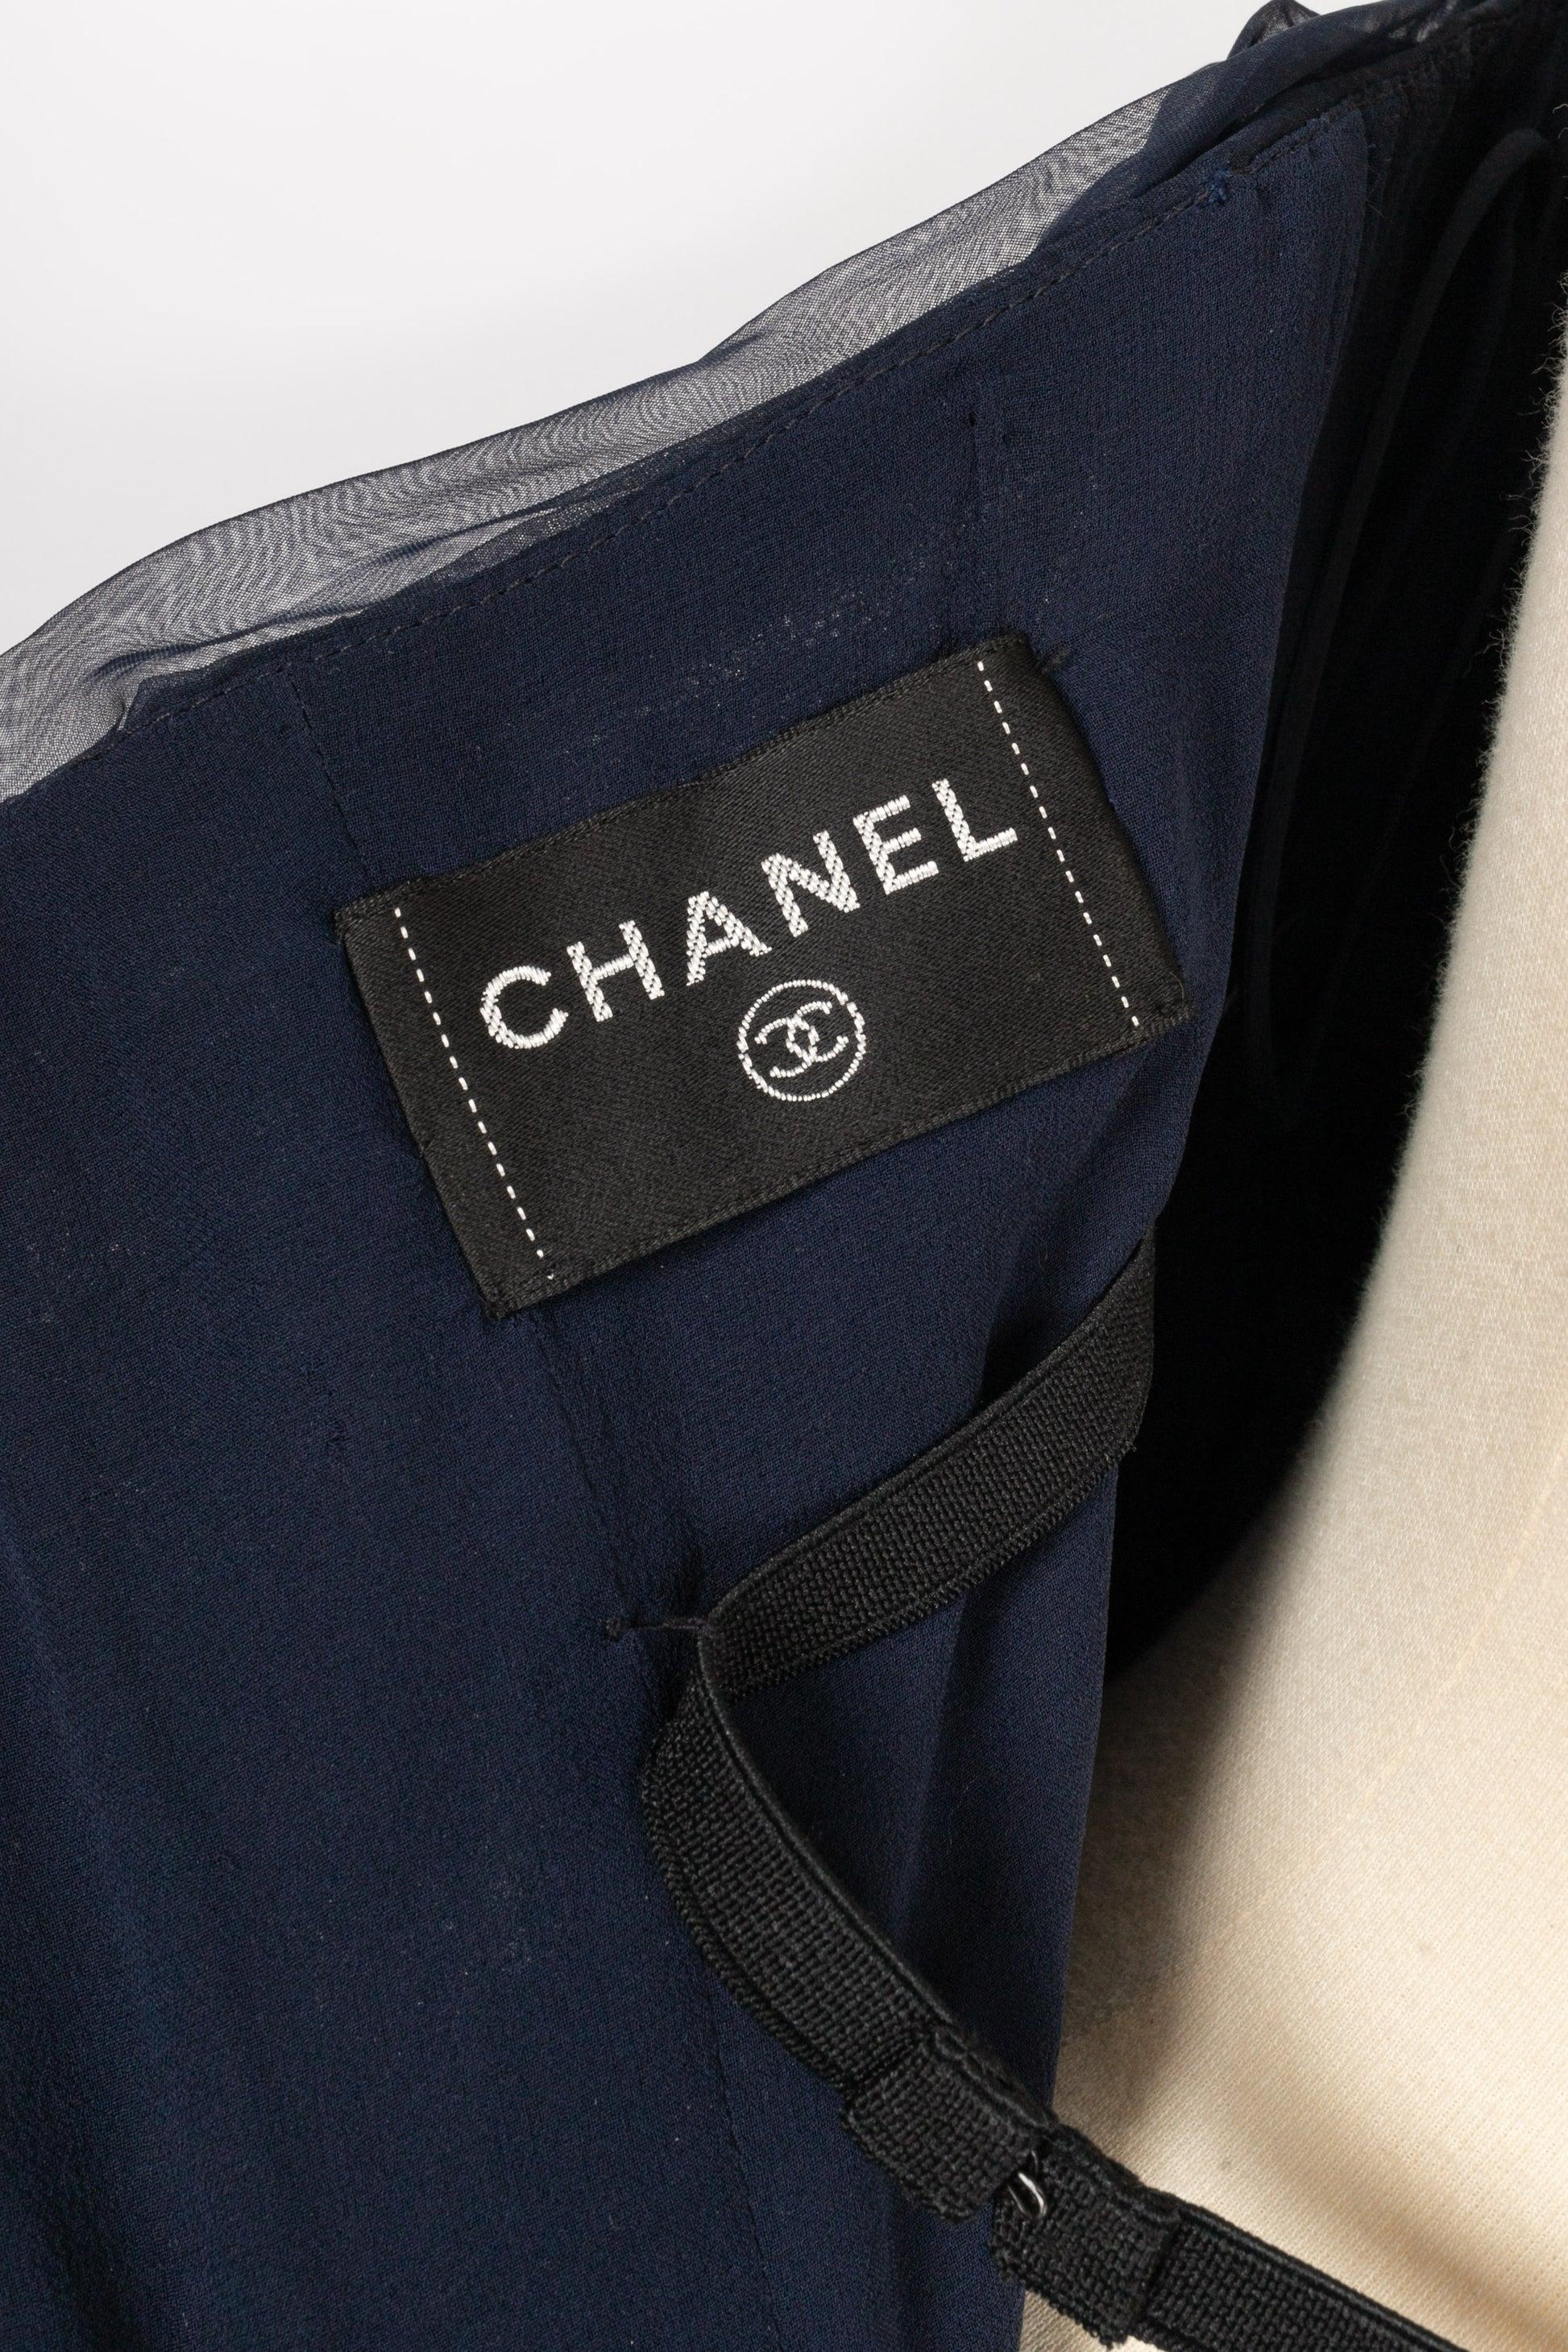 Chanel Long Bustier Dress in Navy Blue Pleated Silk Taffeta For Sale 4